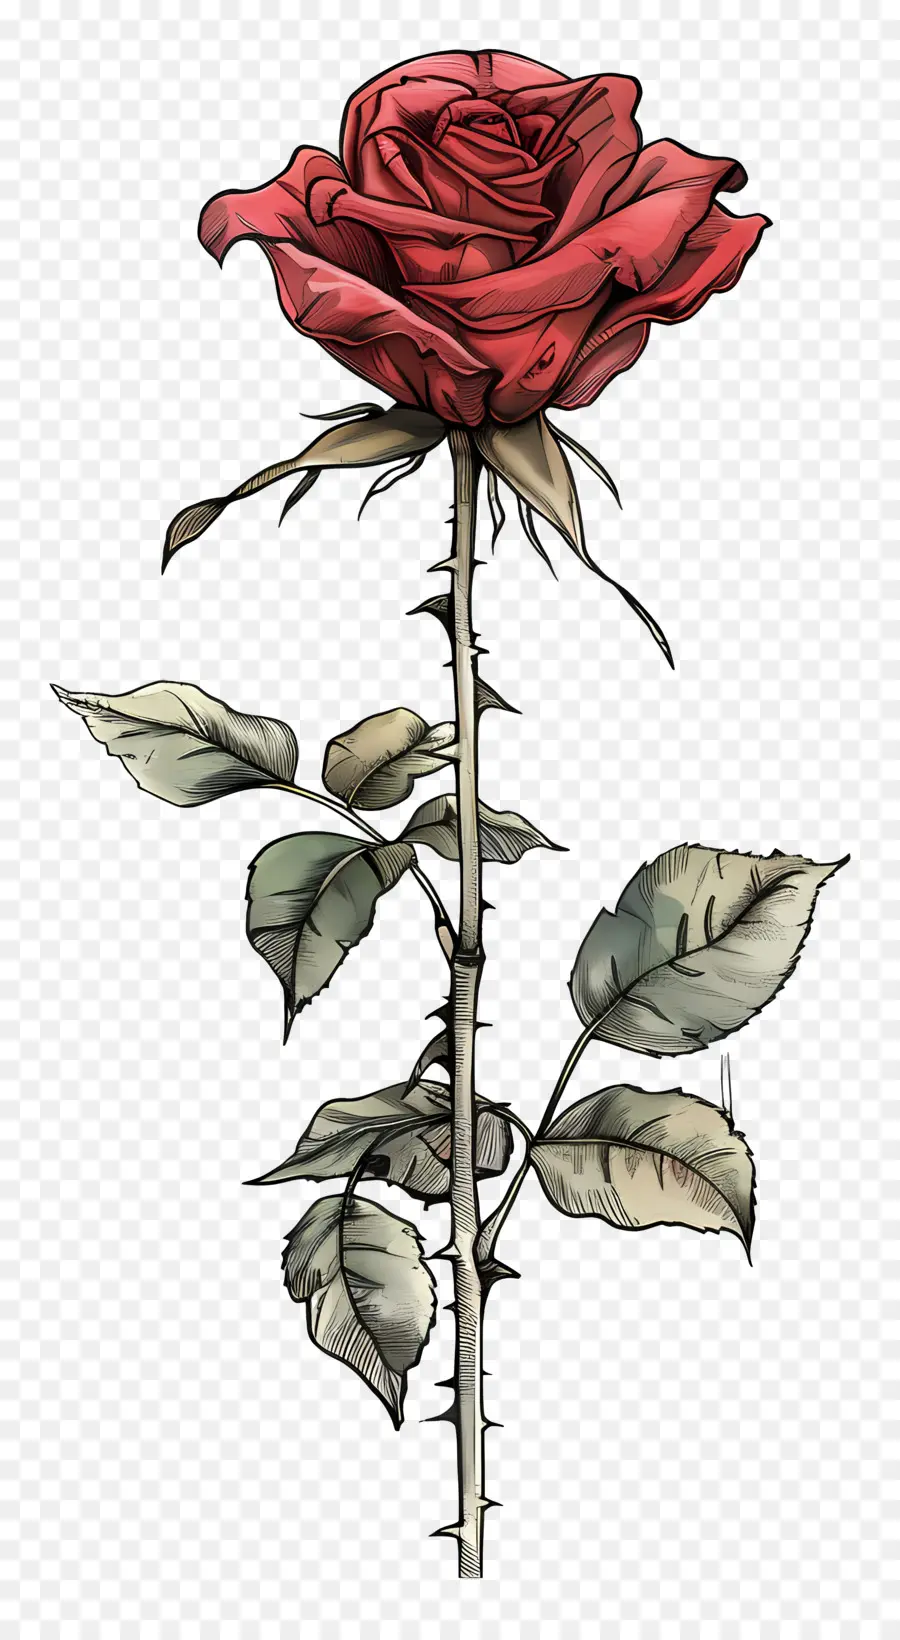 Mawar Merah Batang Panjang，Mawar Merah PNG